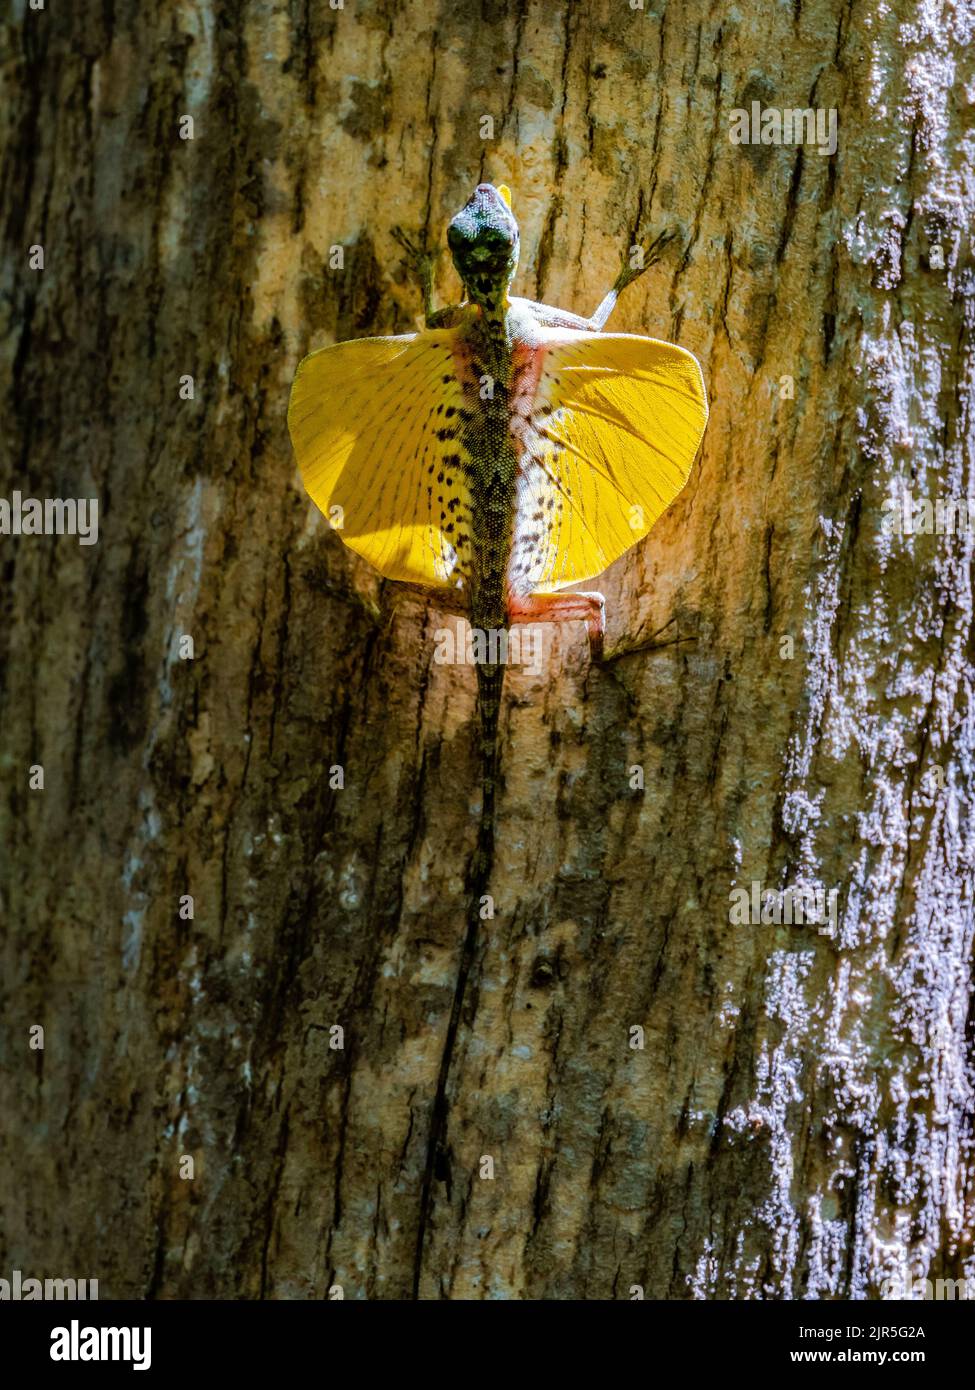 Un lagarto paralelo de Sulawesi endémico (Draco spilonotus) en exhibición con patagia amarilla brillante abierta. Parque Nacional de Tangkoko, Sulawesi, Indonesia. Foto de stock